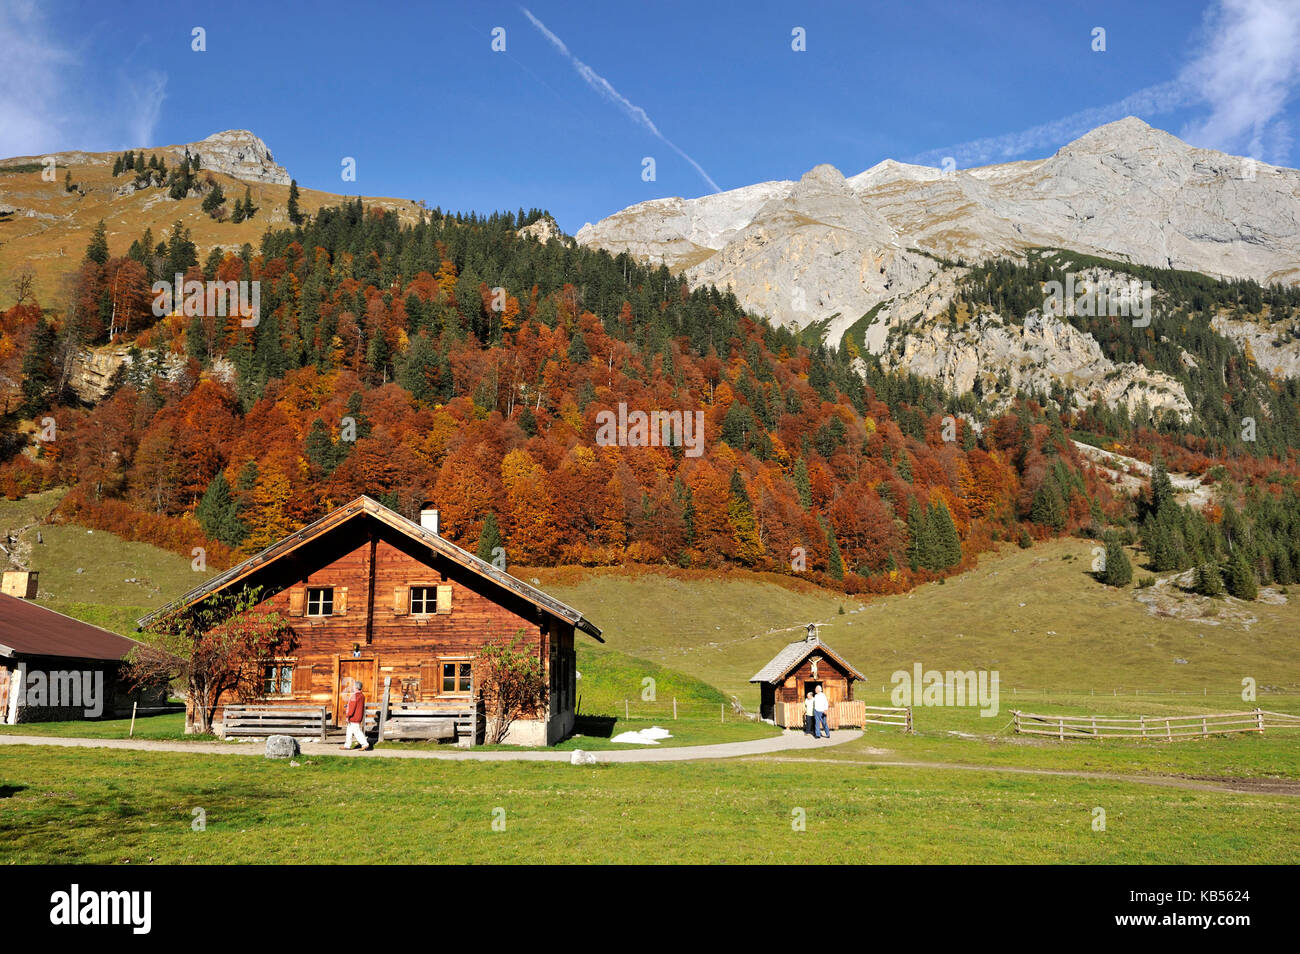 Autriche, Tyrol, karwendel, grosser ahornboden, fra alm Banque D'Images